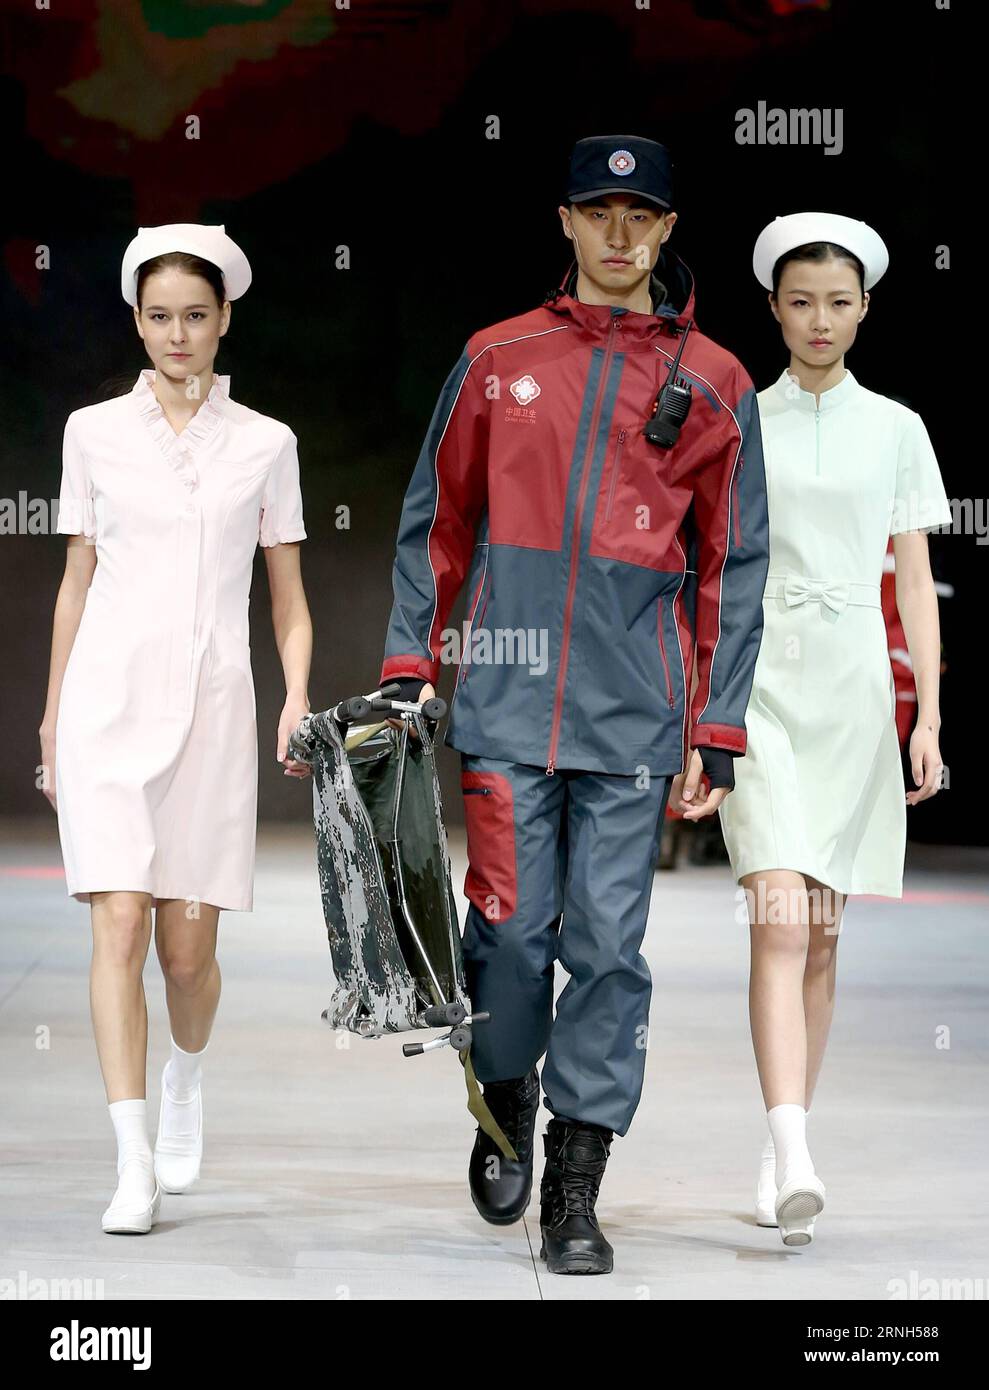 Les mannequins présentent des uniformes de protection de la marque SWOTO par le designer Liu Wei lors de la China Fashion week à Beijing, capitale de la Chine, le 28 octobre 2016. (Ry) CHINA-BEIJING-FASHION WEEK(CN) ChenxJianli PUBLICATIONxNOTxINxCHN les modèles présentent LES UNIFORMES DE protection de la marque par les designers Liu Wei pendant la semaine de la mode de la Chine à Beijing capitale de la Chine OCT 28 2016 Ry China Beijing Fashion week CN ChenxJianli PUBLICATIONxNOTxINxCHN Banque D'Images